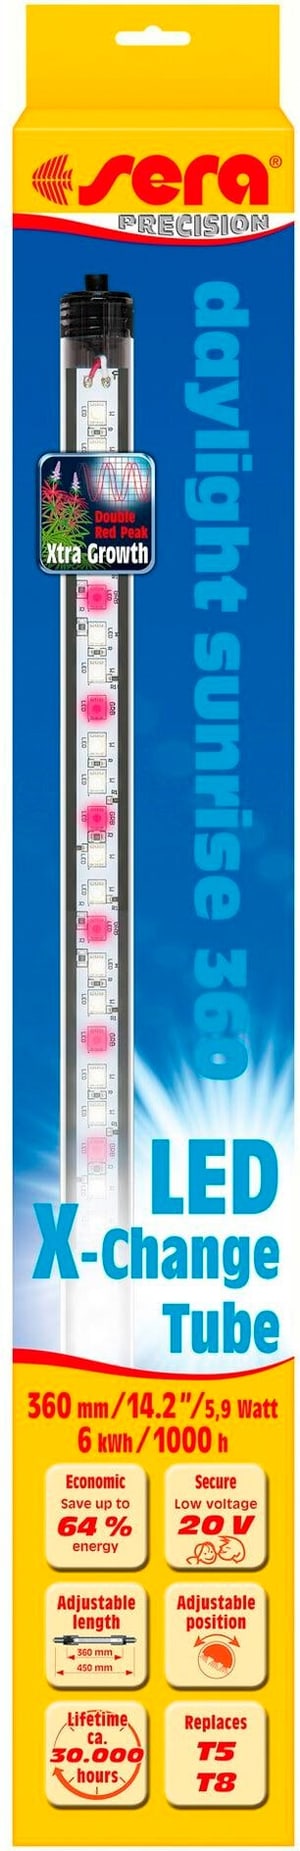 Illuminant LED X-Change Tube DS, 360 mm